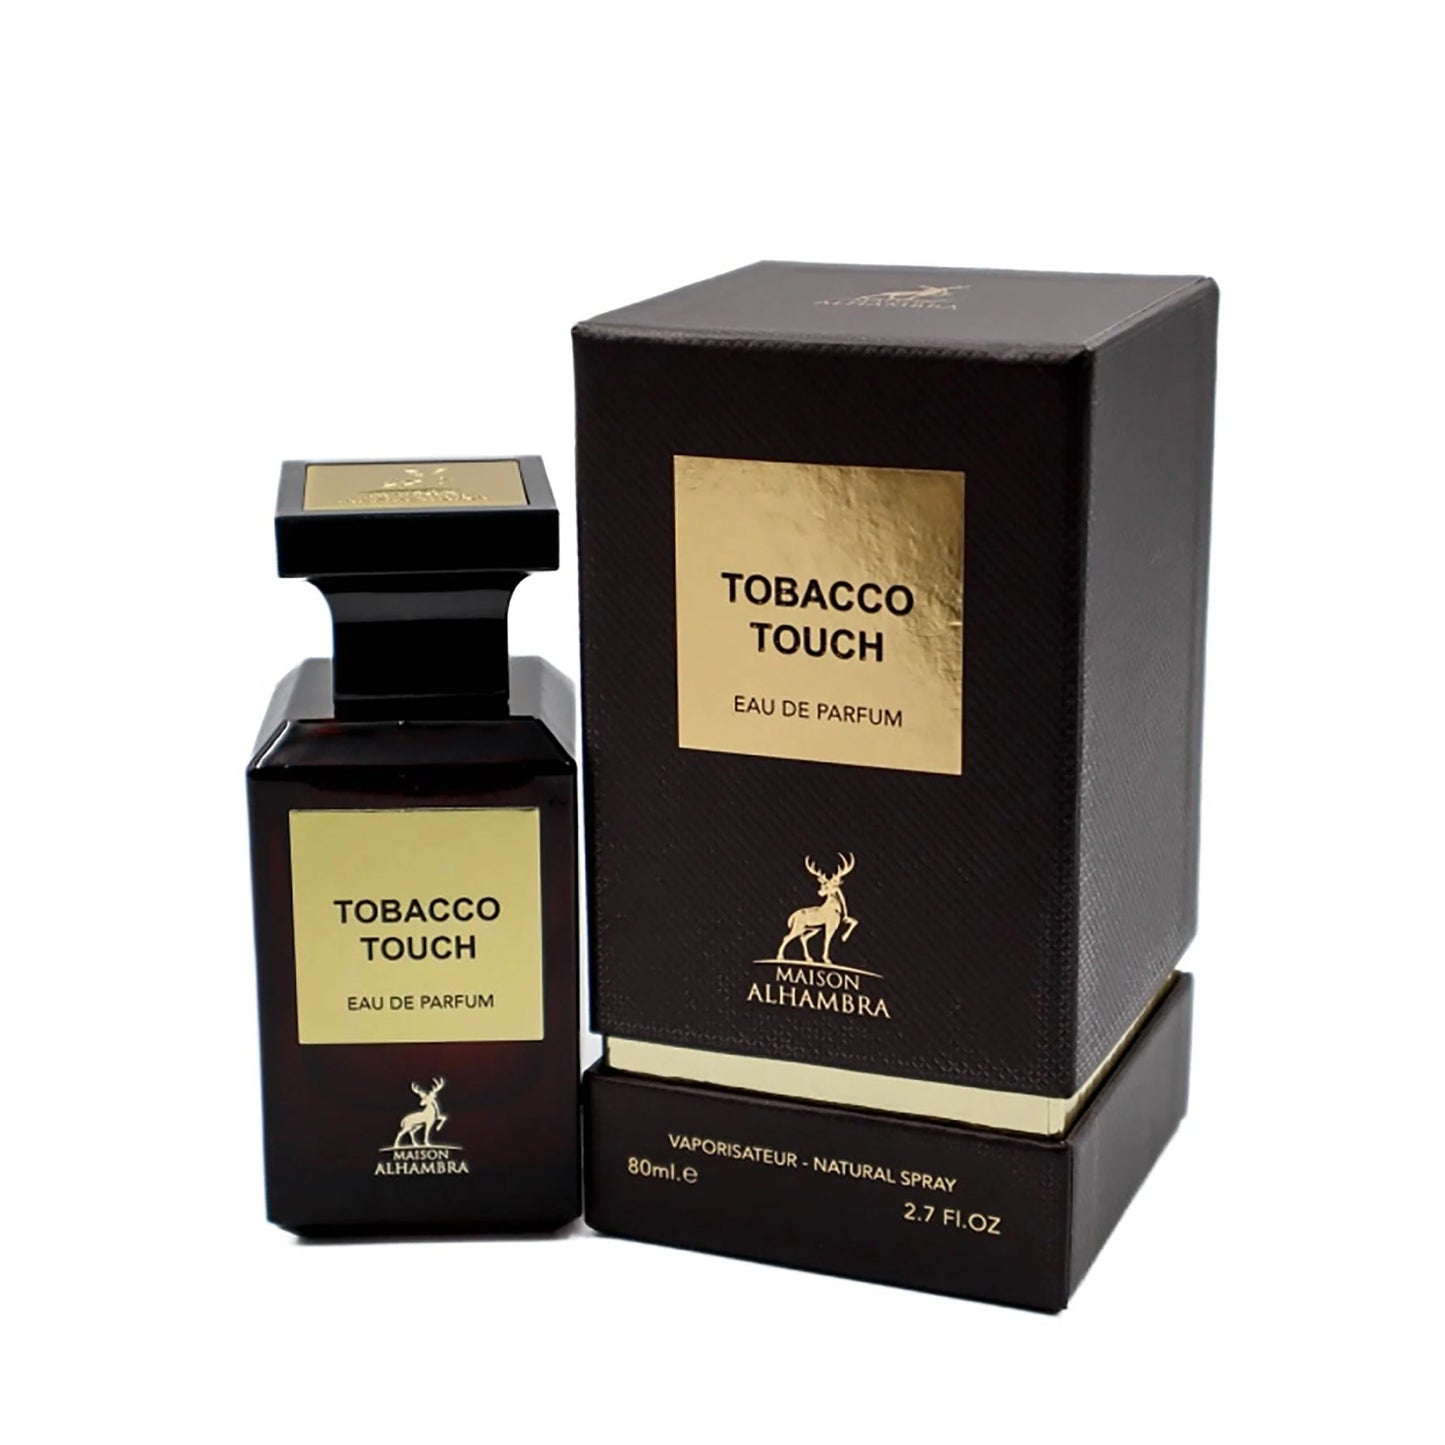 Maison Alhambra Tobacco Touch – sheikhdot